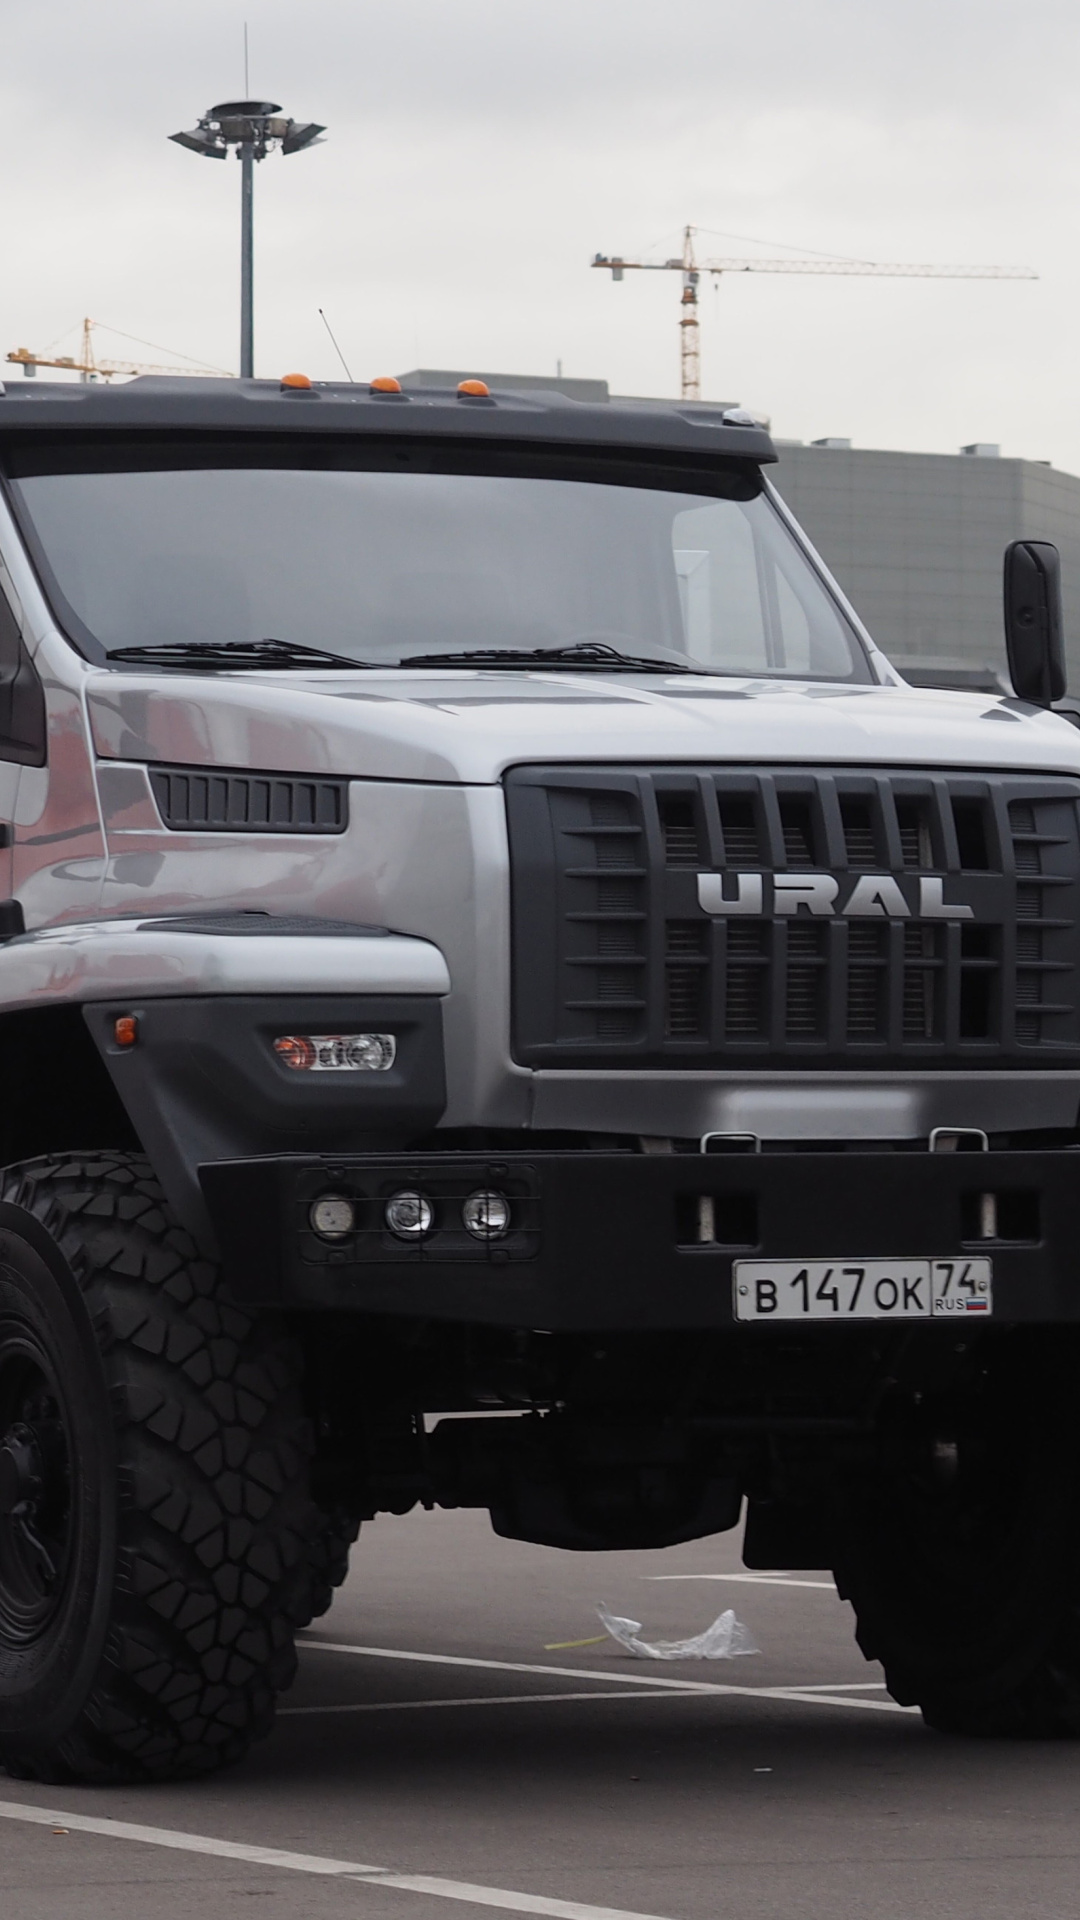 Fondo de pantalla Ural Next Flatbed Truck 1080x1920